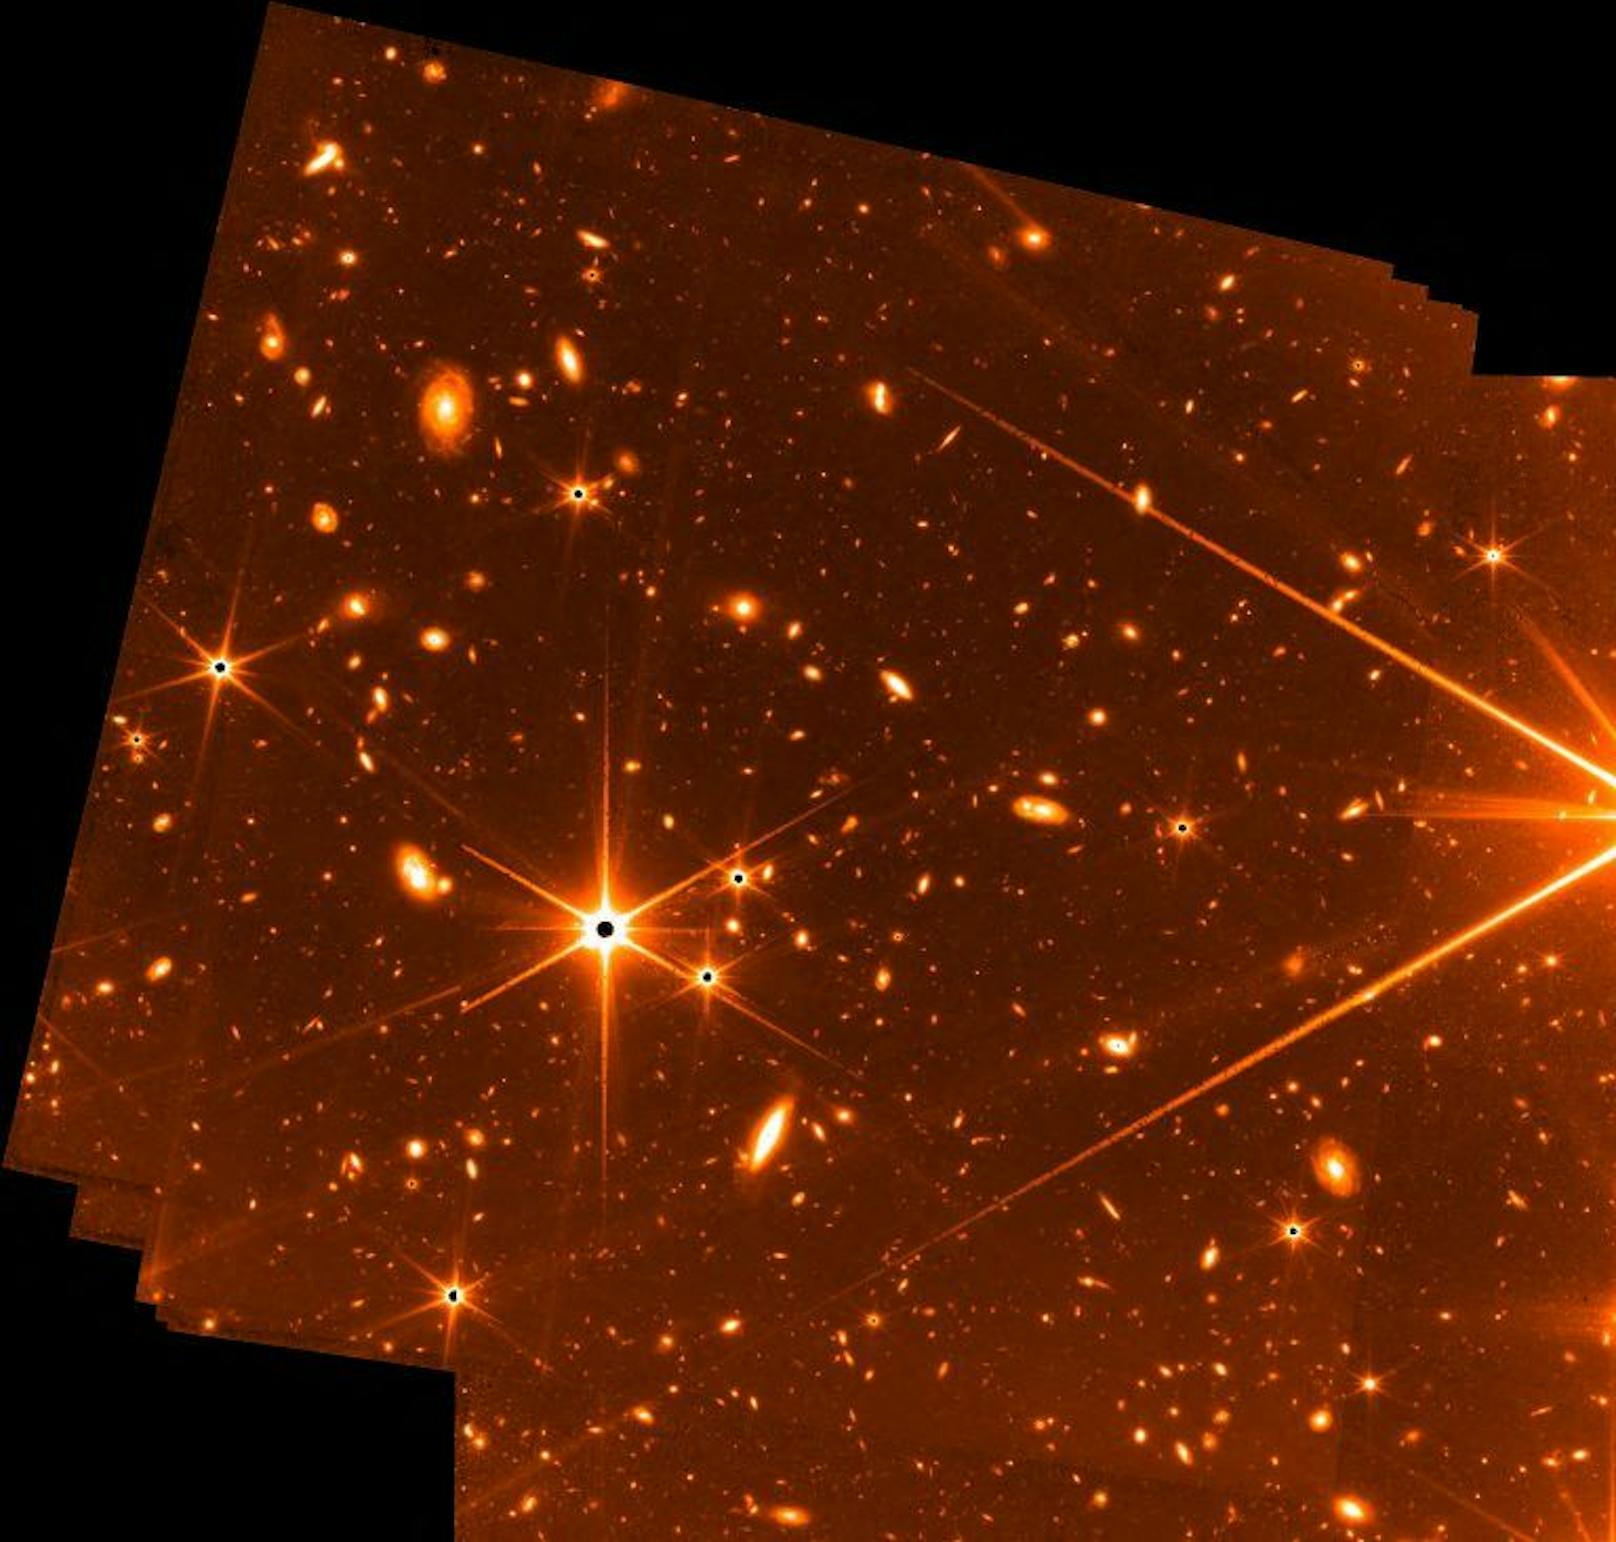 Lichtermeer in leuchtendem Orange: Die Vorschau der NASA zeigt den Ausschnitt eines Bildes, auf dem Sterne und Galaxien zu sehen sind, entstanden mit 72 Aufnahmen in einem Zeitraum von 32 Stunden. "Eine der tiefgehendsten Aufnahmen, die je vom Universum gemacht wurden".